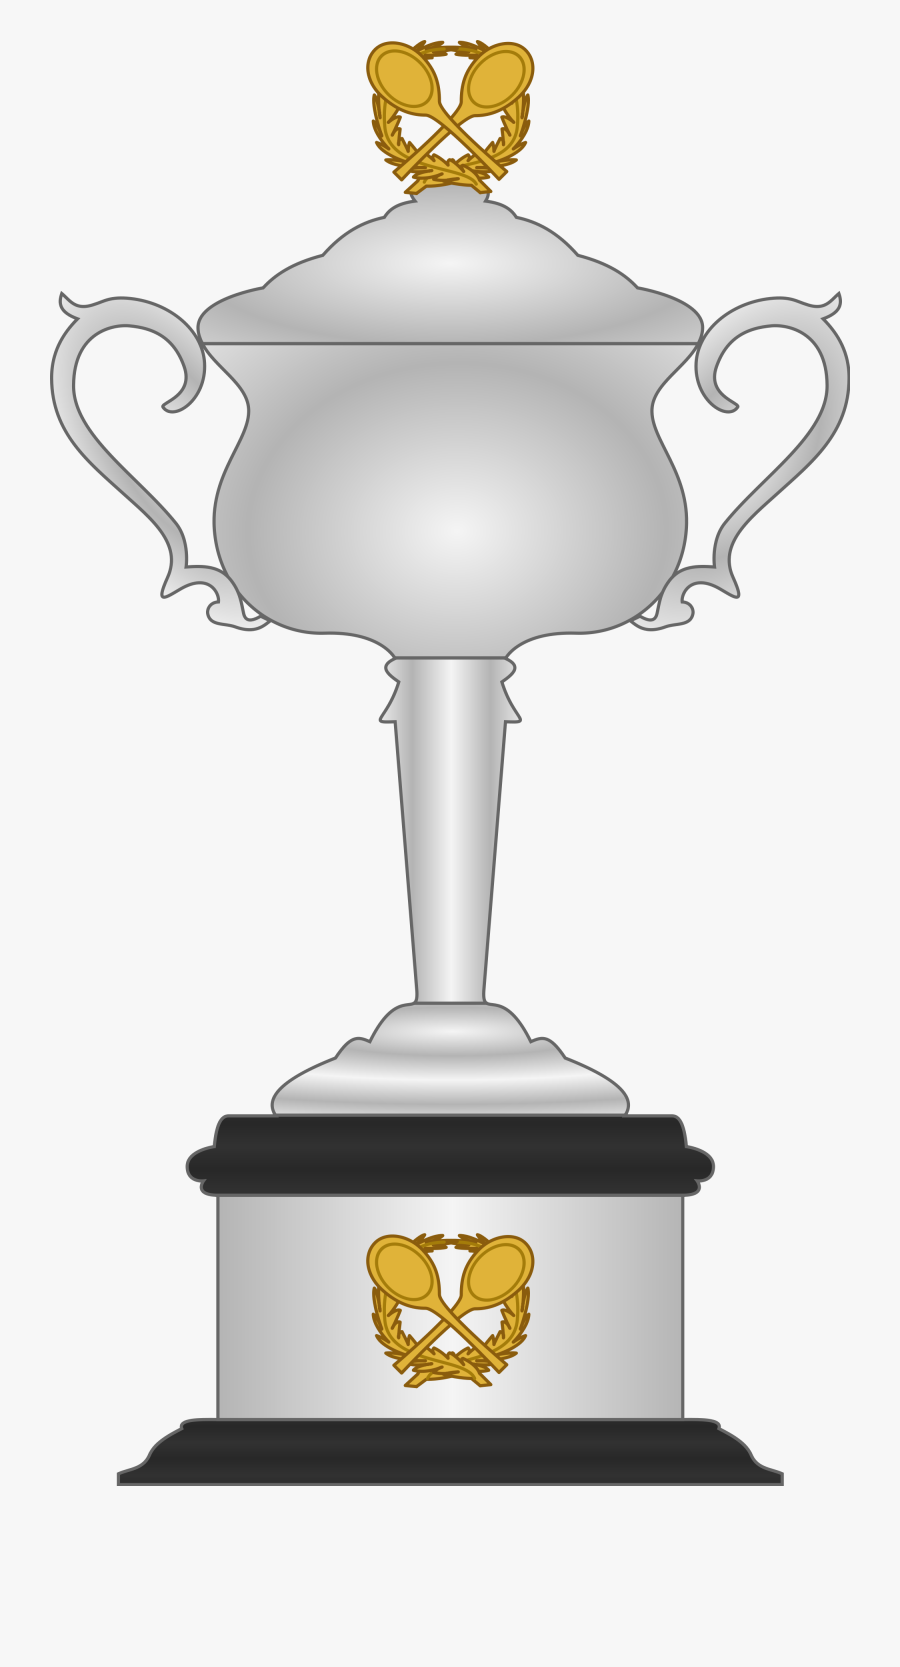 Transparent Trophy Clip Art - Australian Open Trophy Png, Transparent Clipart